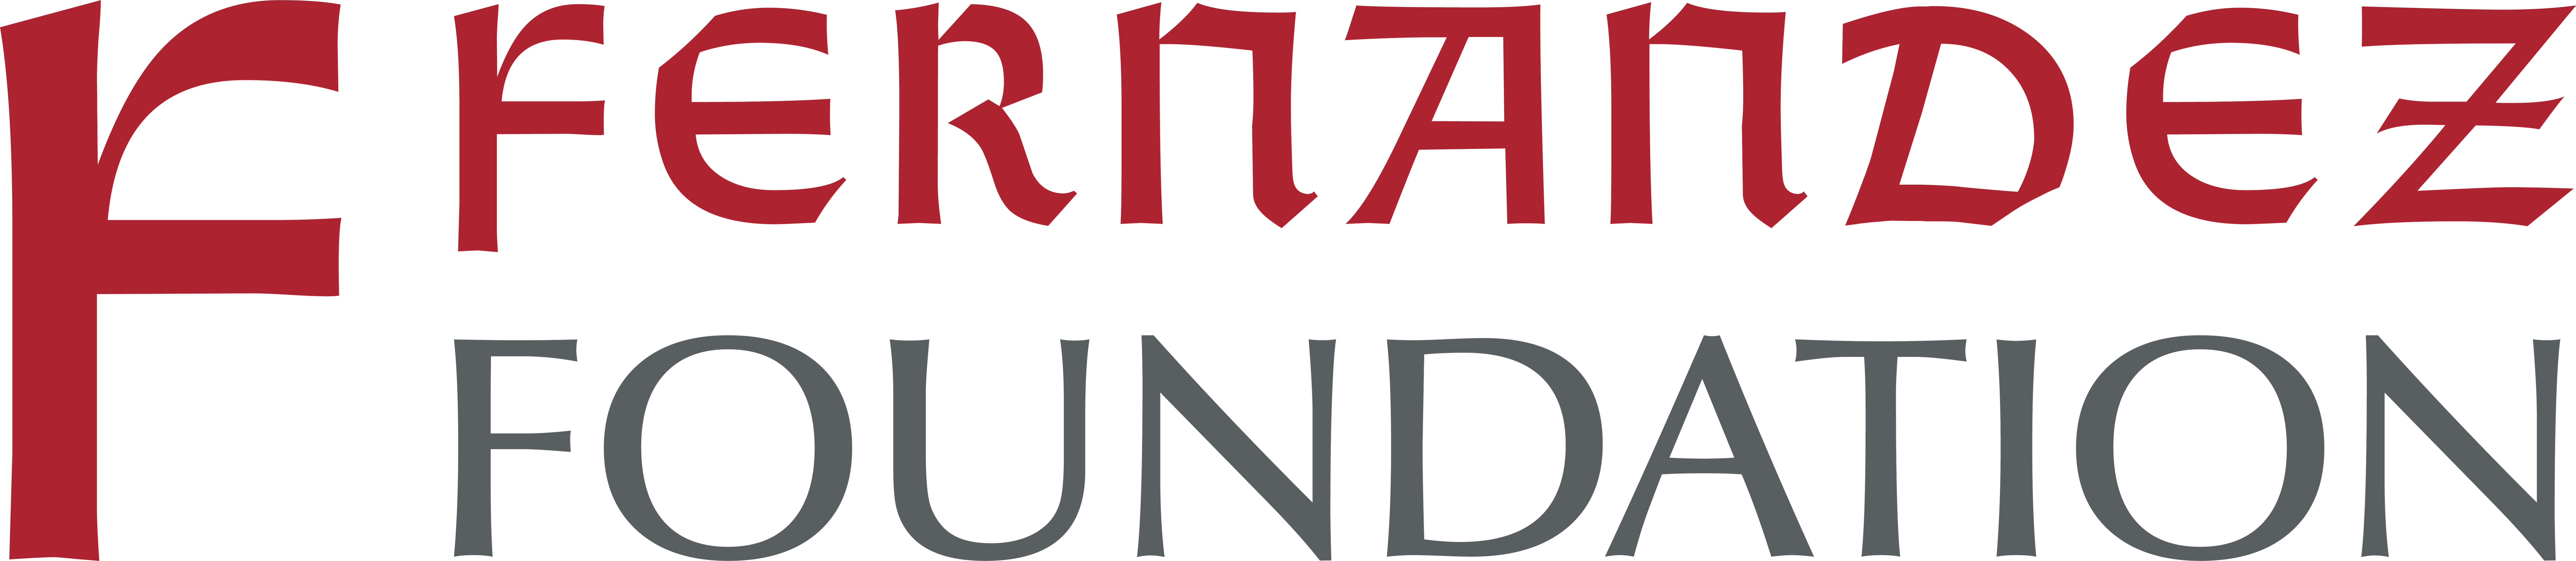 Logo of Fernandez Foundation